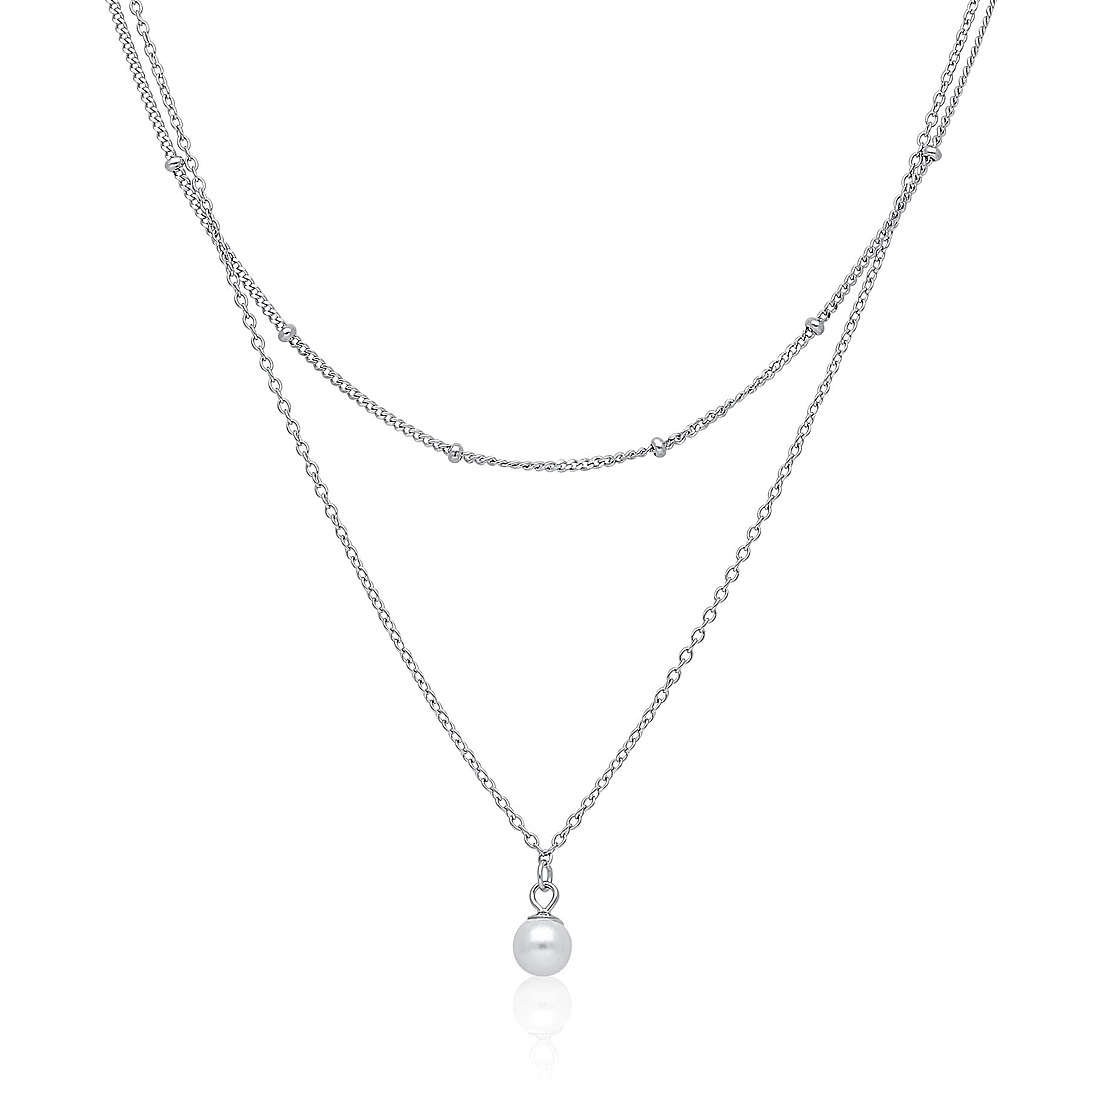 necklace woman jewellery GioiaPura ST65182-01RH